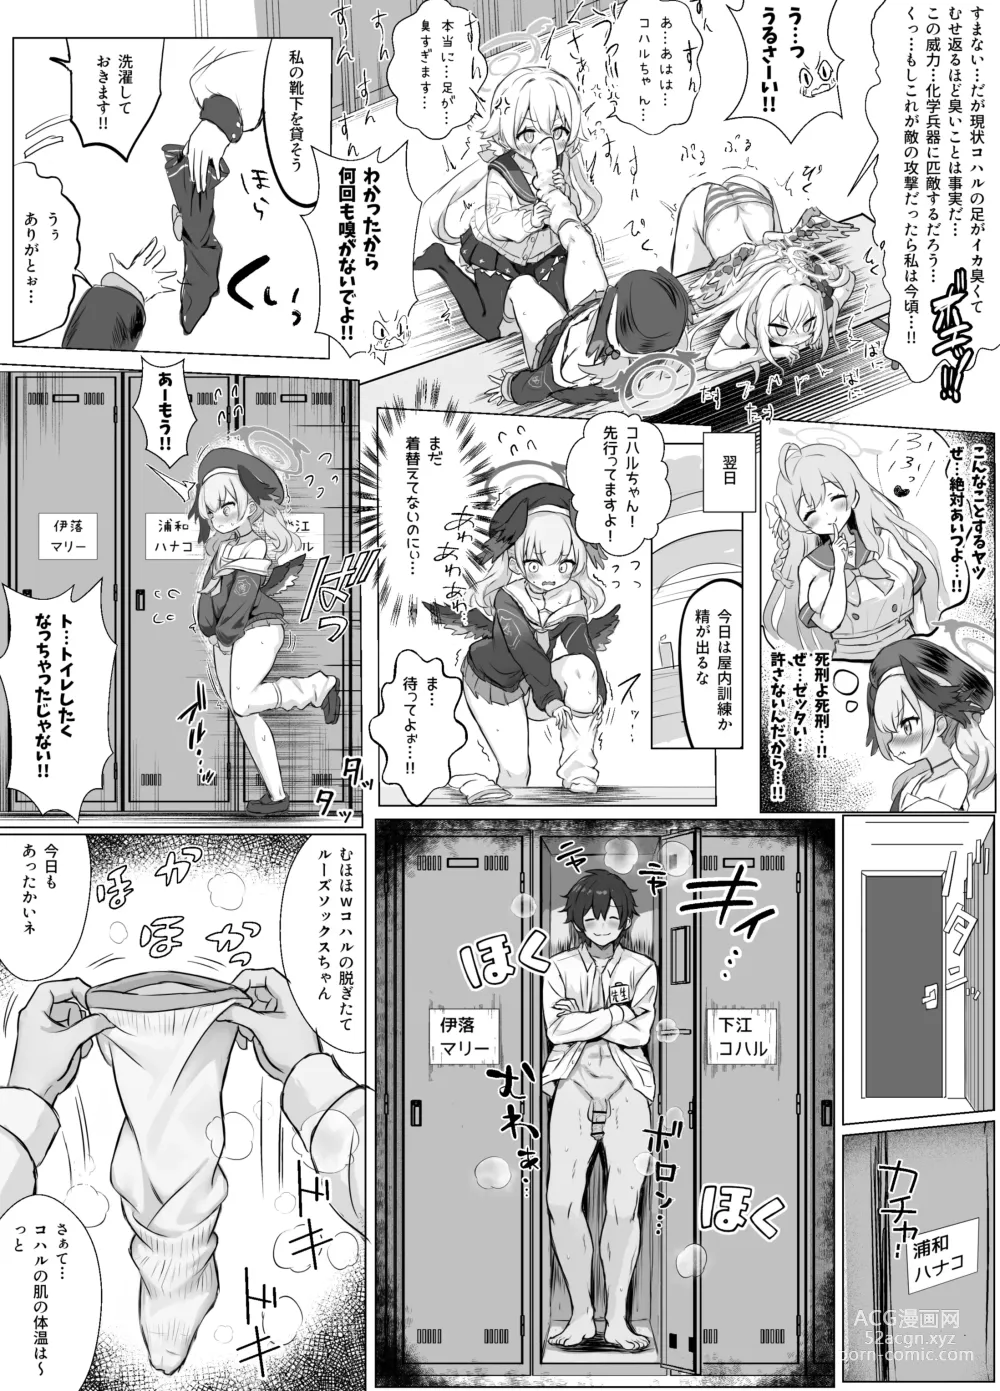 Page 2 of doujinshi Koharu to Hentai Sensei